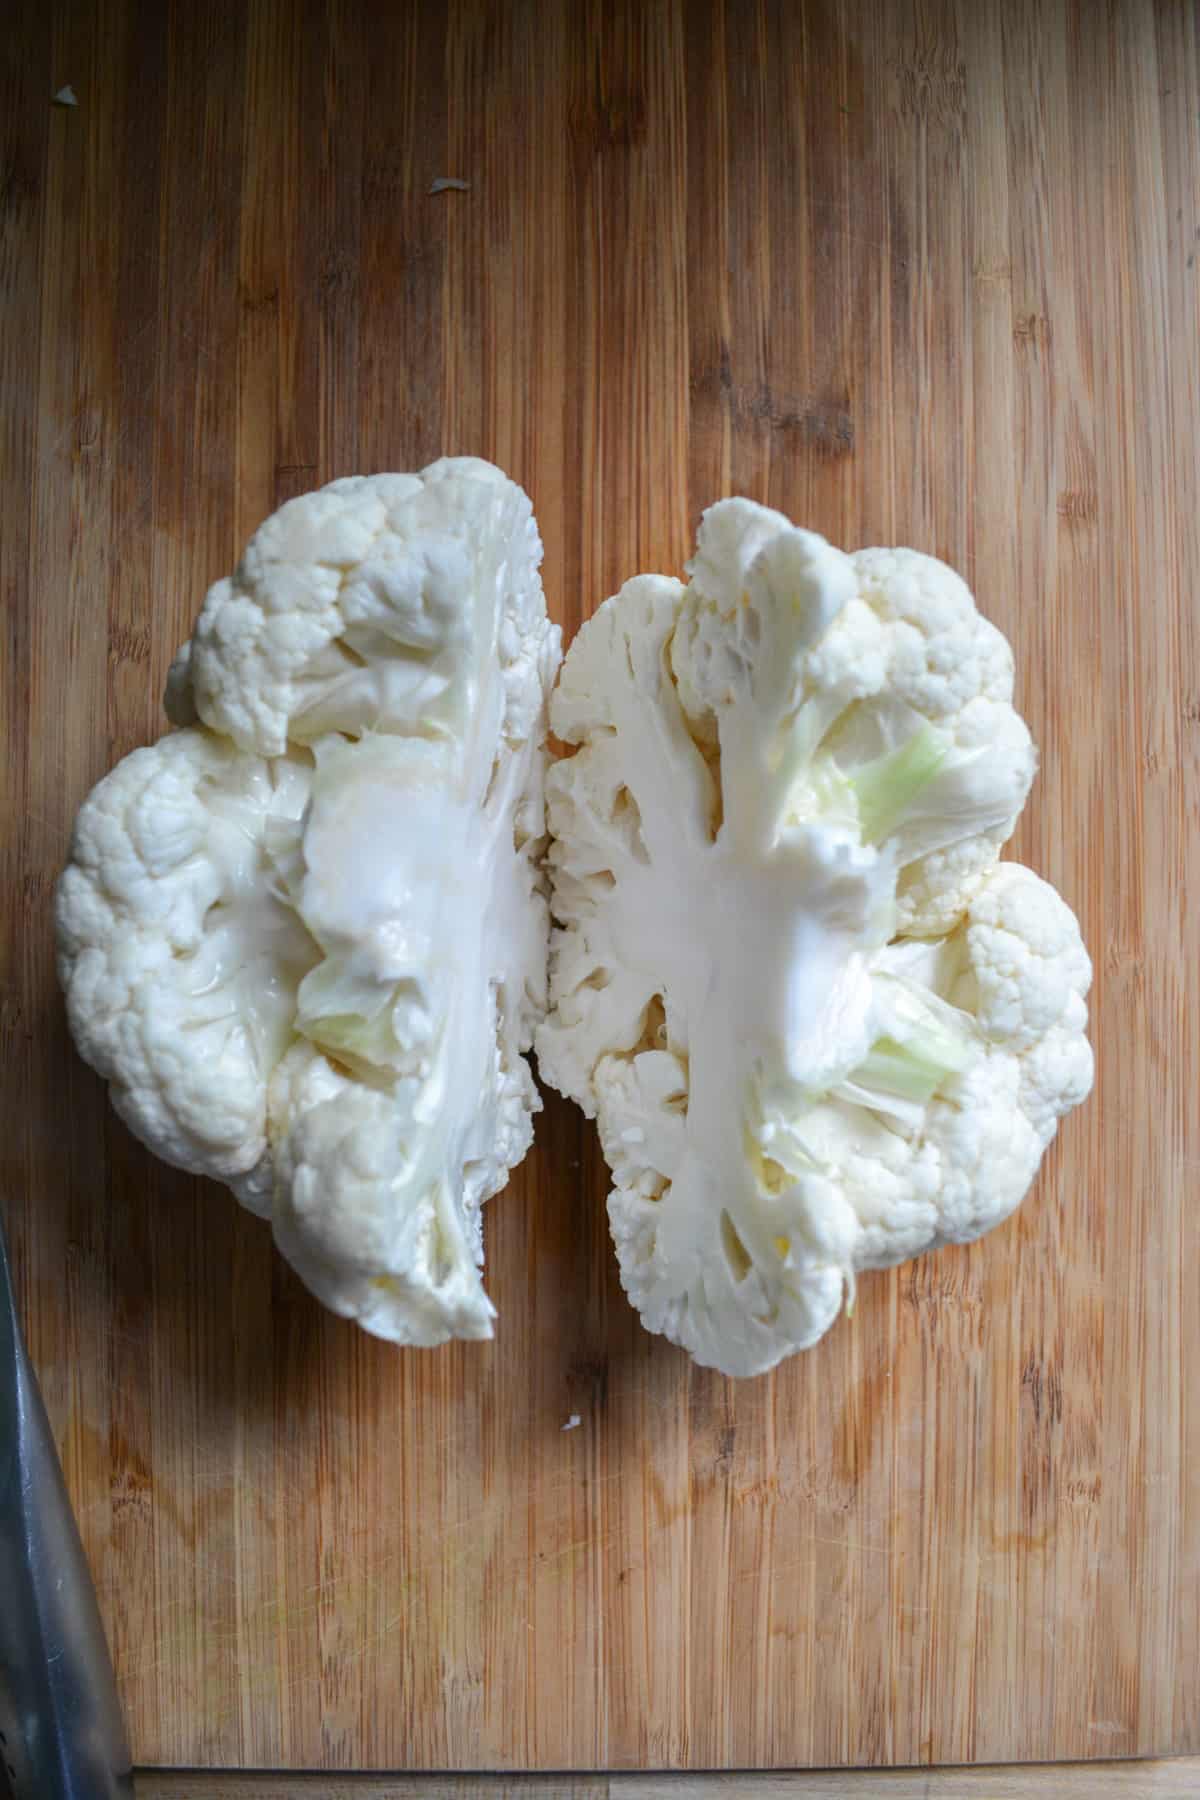 A head of cauliflower cut in half